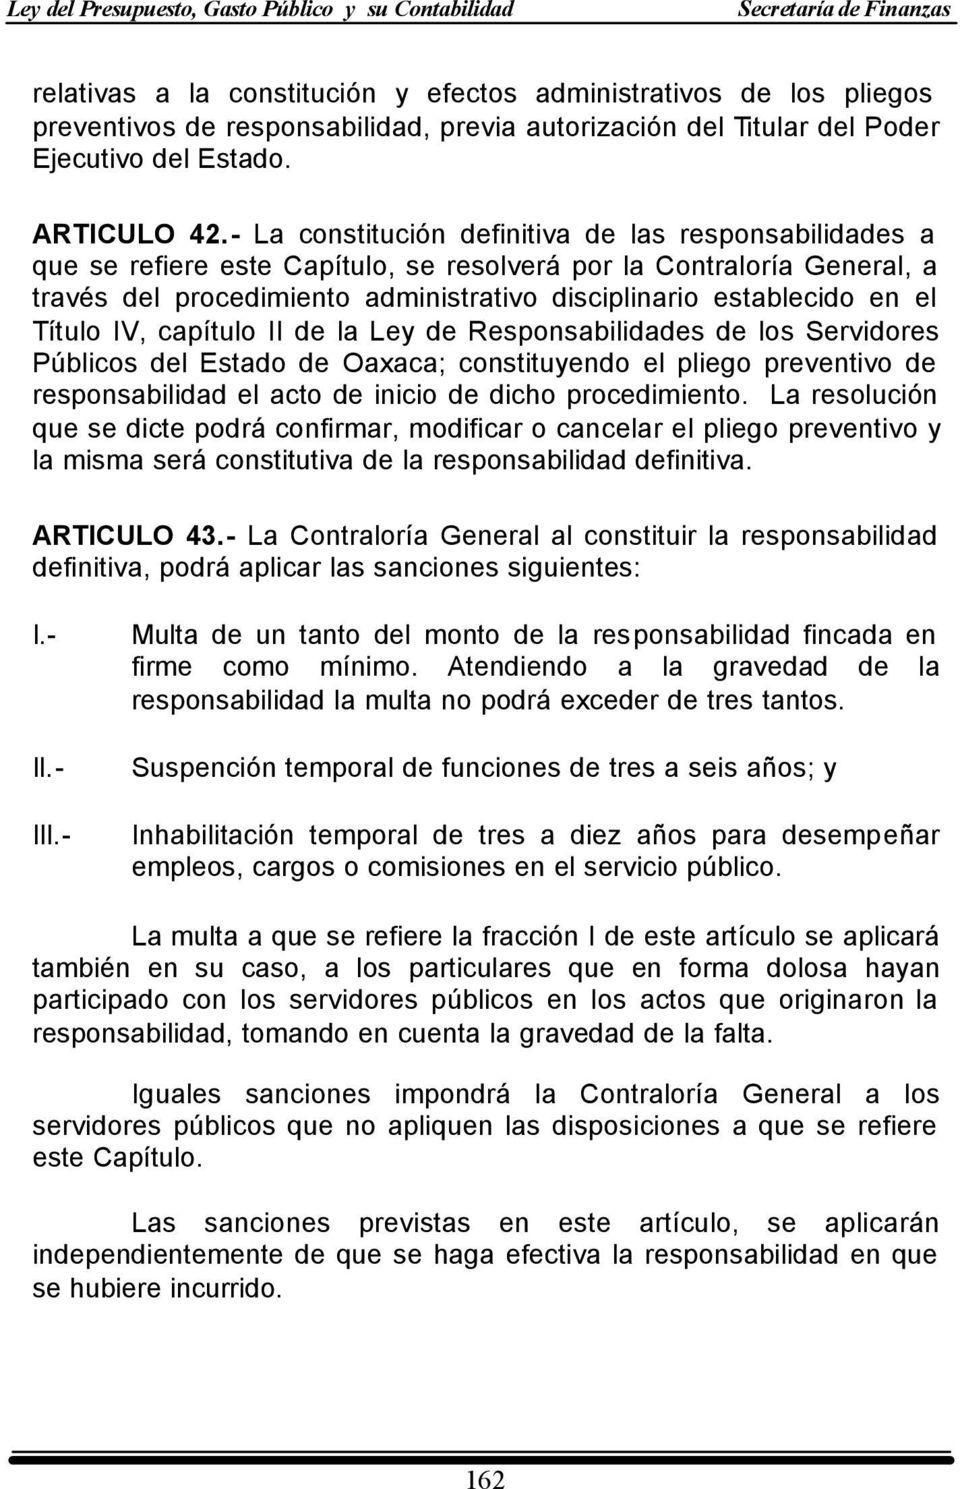 el Título IV, capítulo II de la Ley de Responsabilidades de los Servidores Públicos del Estado de Oaxaca; constituyendo el pliego preventivo de responsabilidad el acto de inicio de dicho